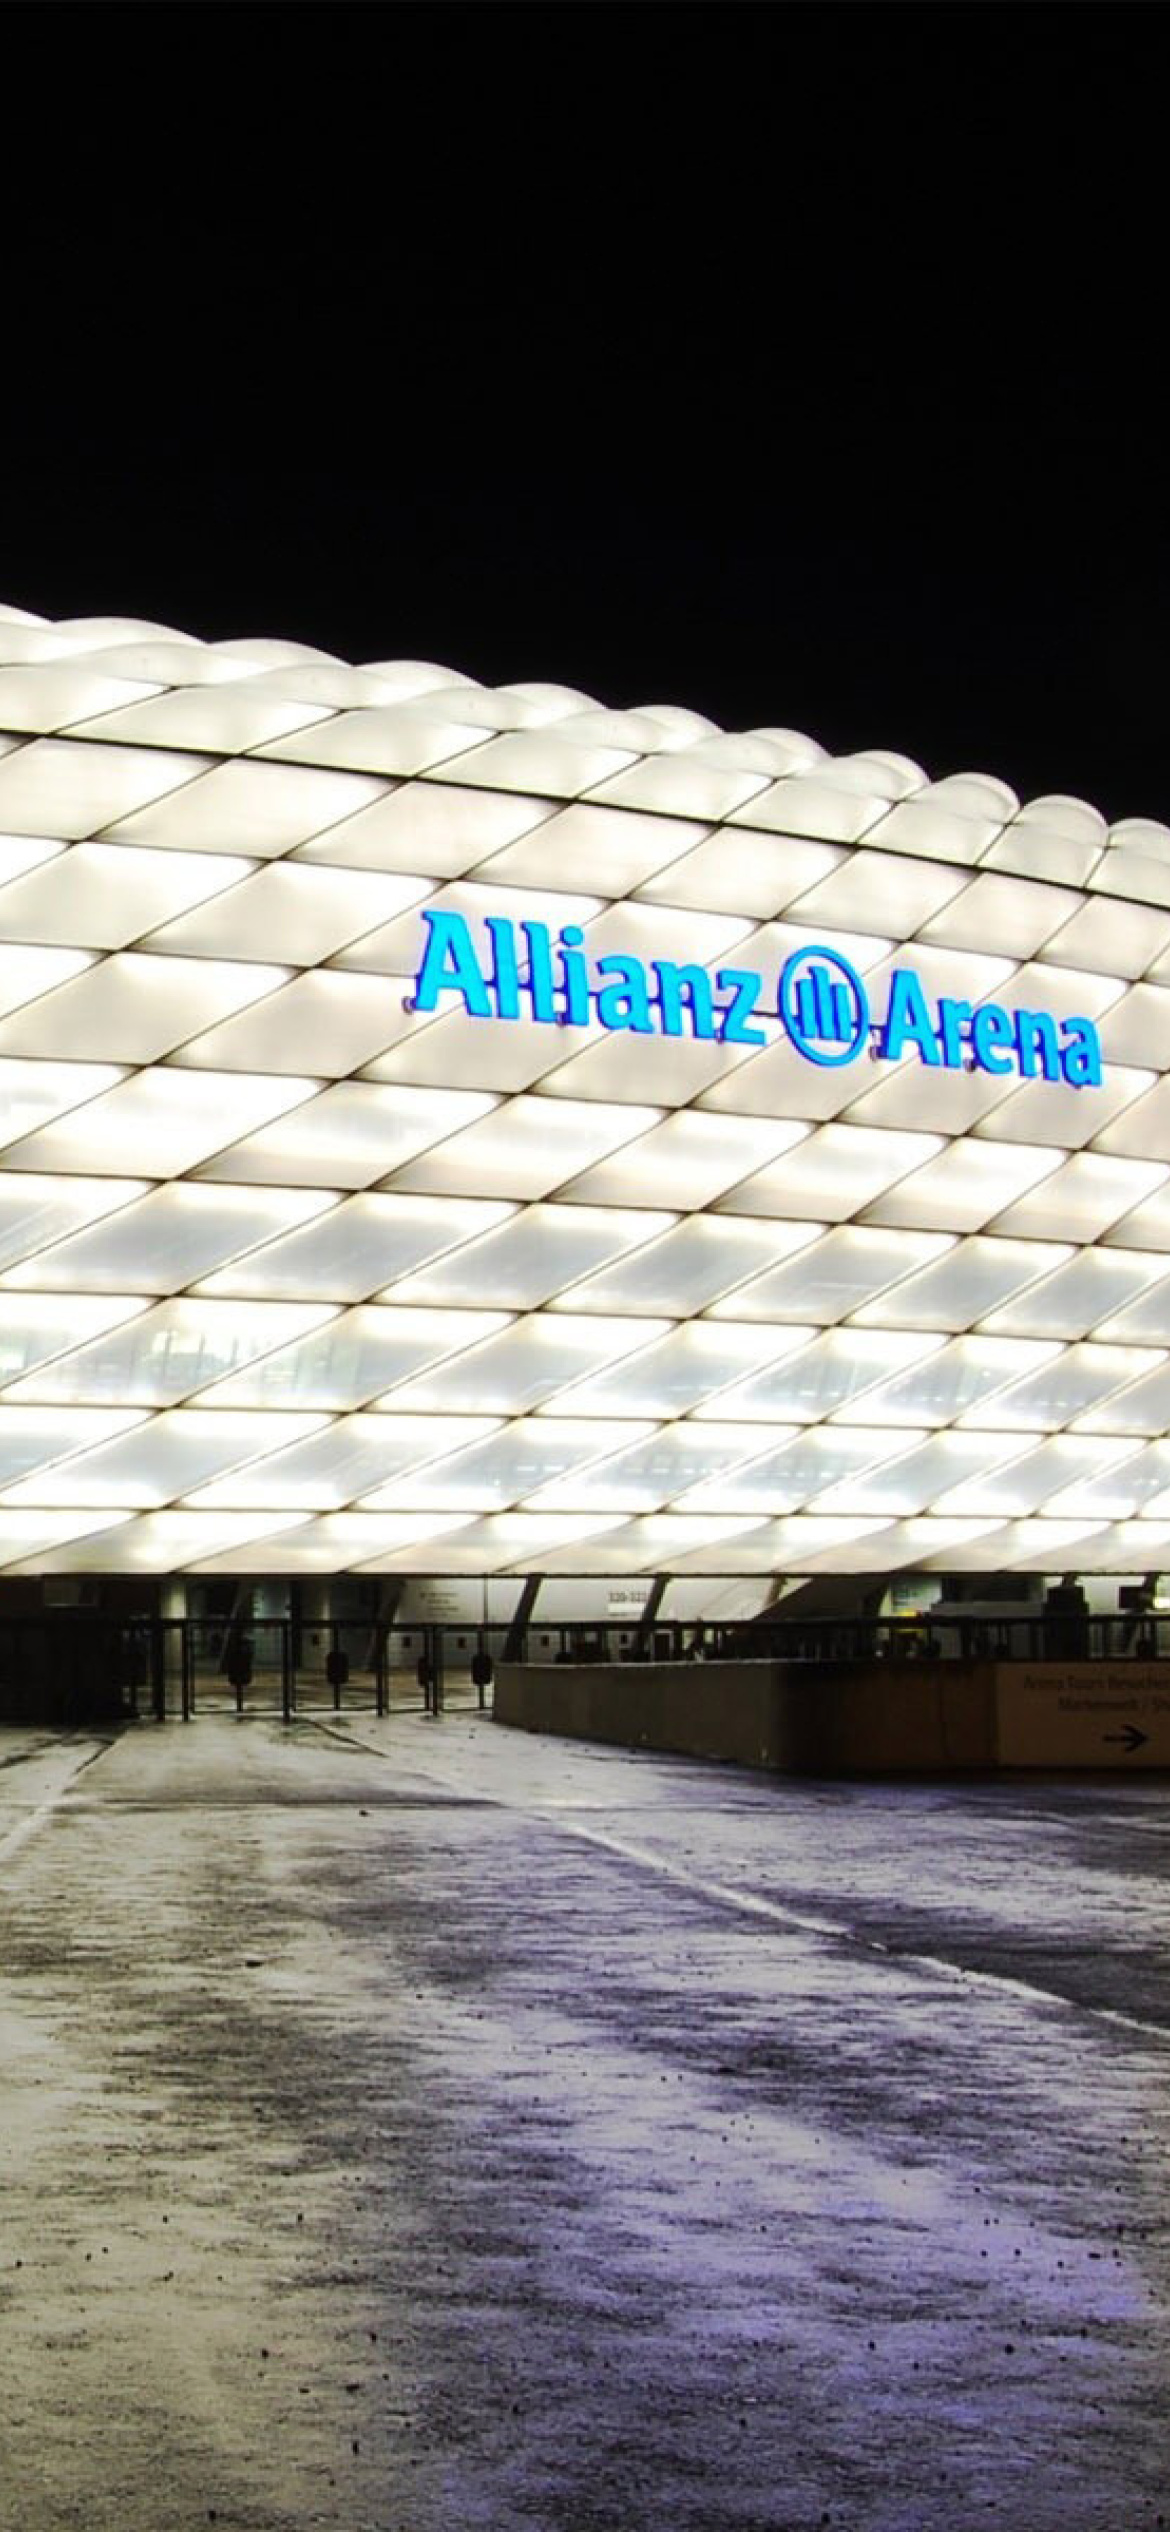 Allianz Arena is stadium in Munich wallpaper 1170x2532